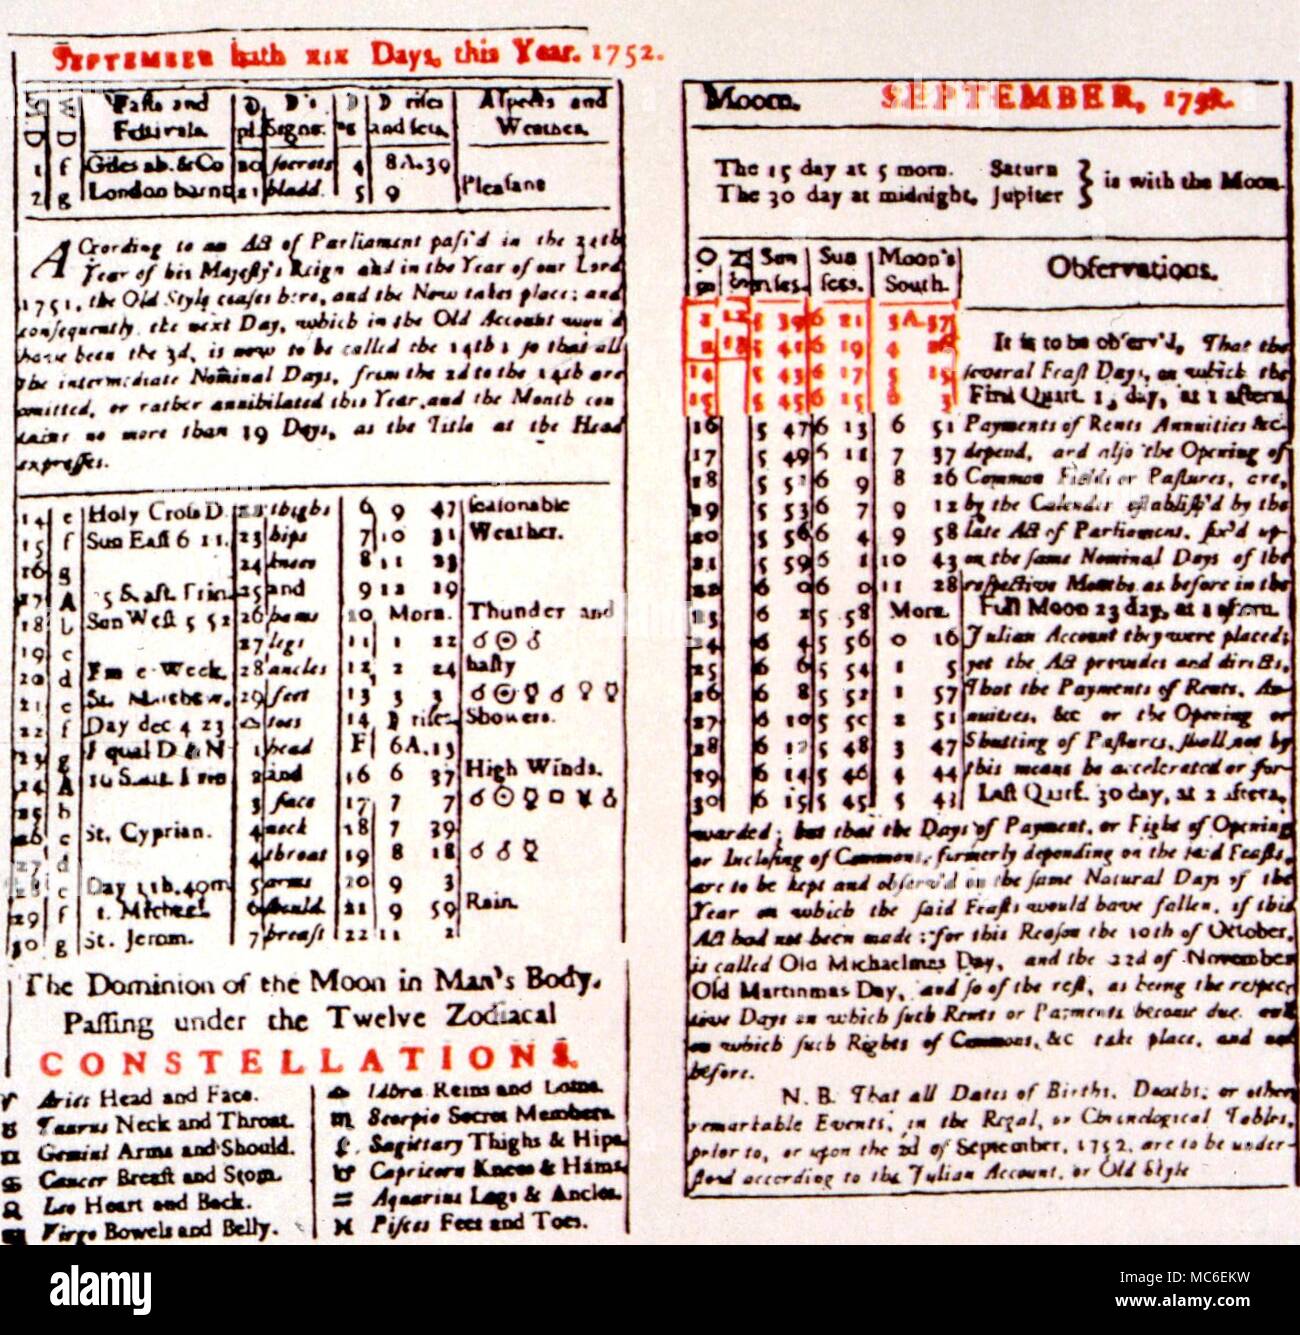 Calendarios - La reforma de 1752. Almanaque para 1752, con datos del mes de septiembre, de forma exclusiva, con una duración de 19 días. Esta es la última reforma calendrical británica, sobre la base de la reforma gregoriana de 1582 Foto de stock